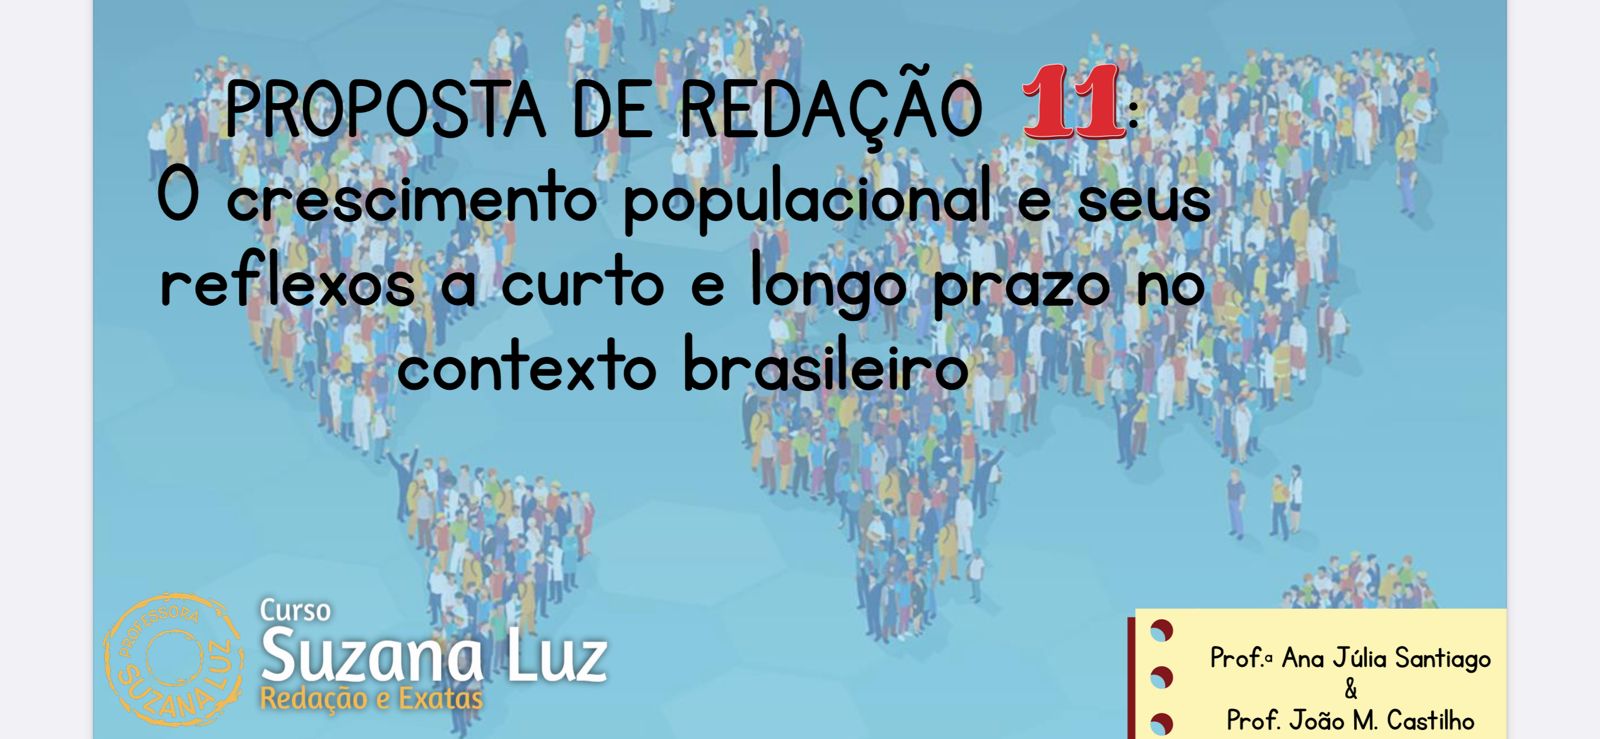 O crescimento populacional e seus reflexos a curto e longo prazo no contexto brasileiro 